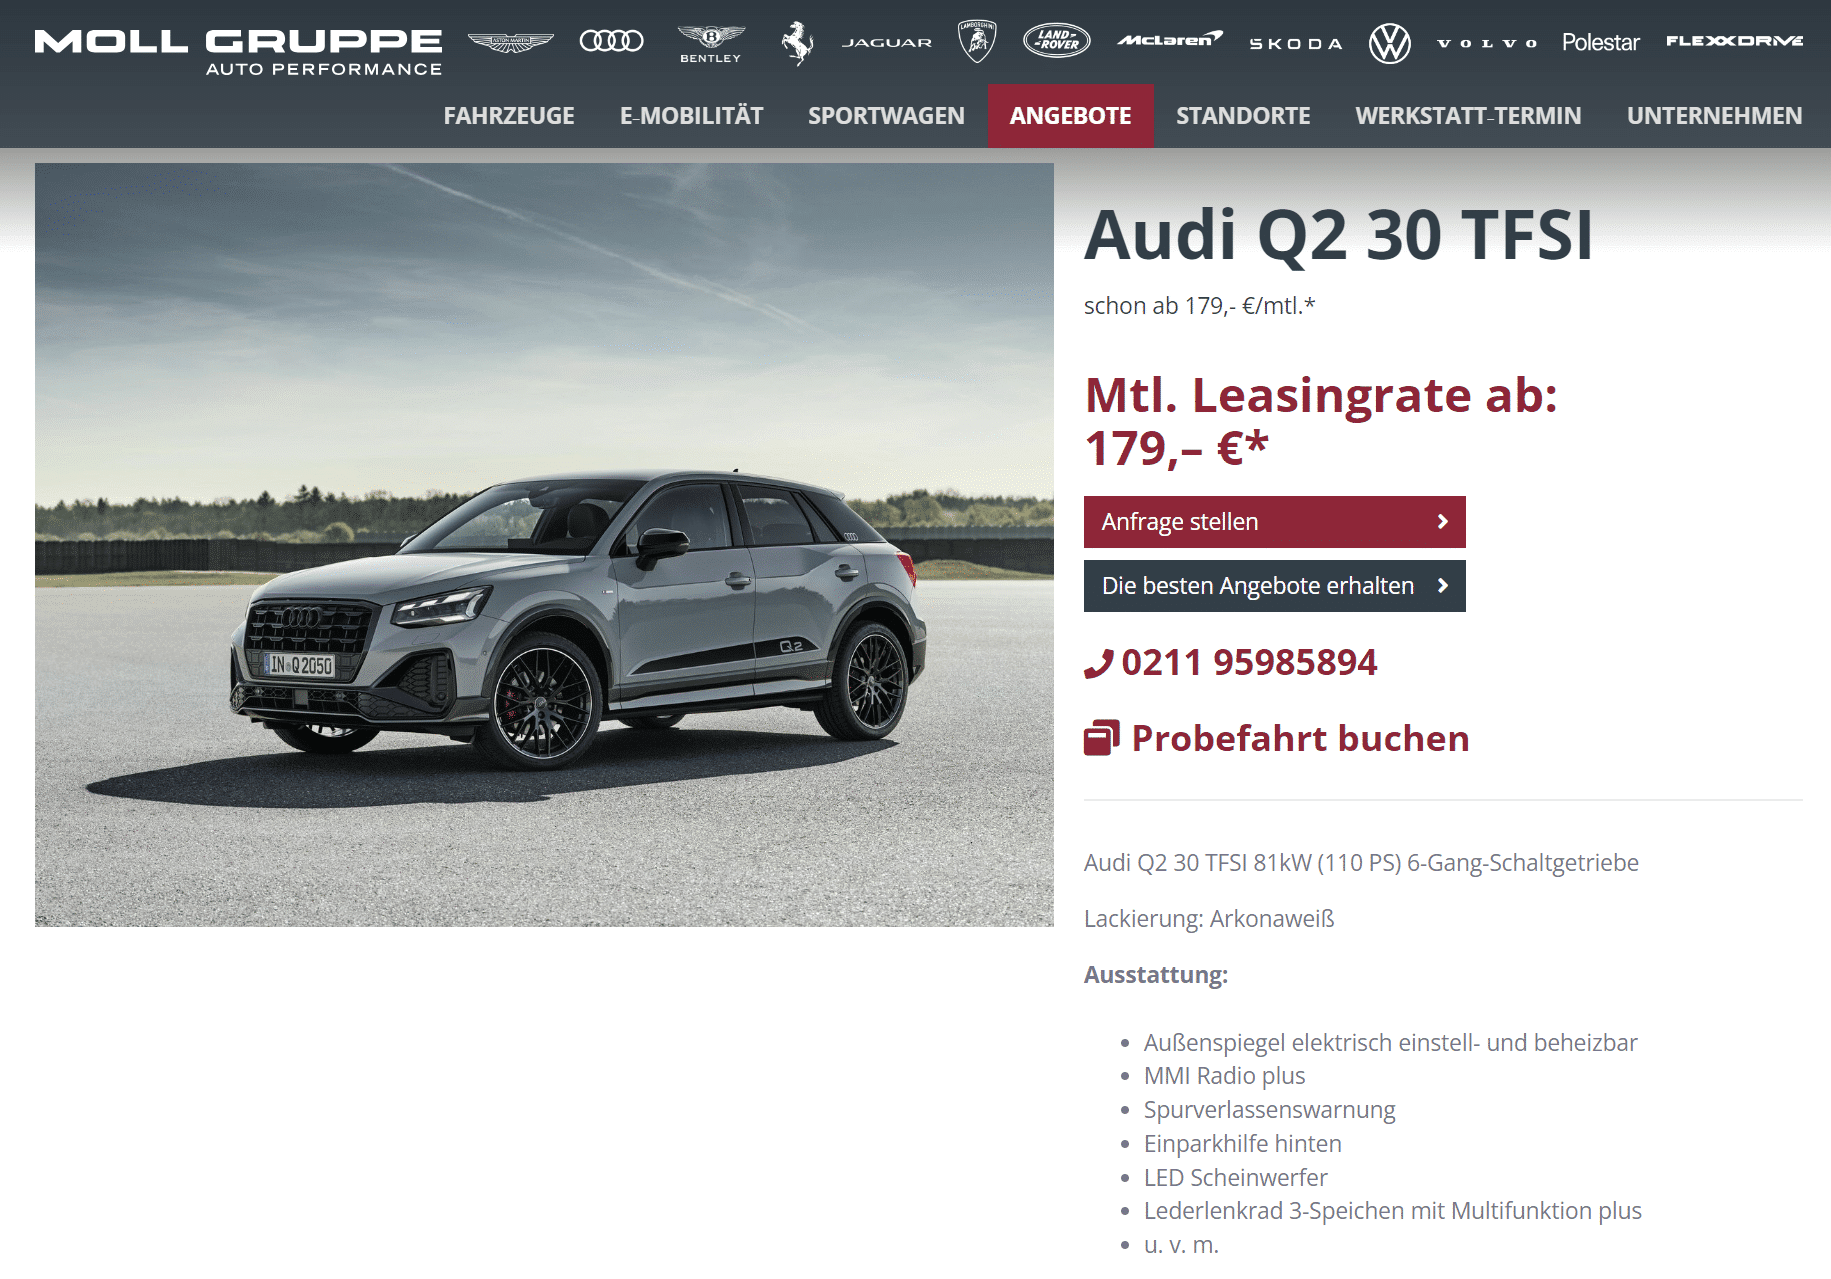 Audi Q2 im Leasing für 179 Euro im Monat netto - ntv Autoleasing